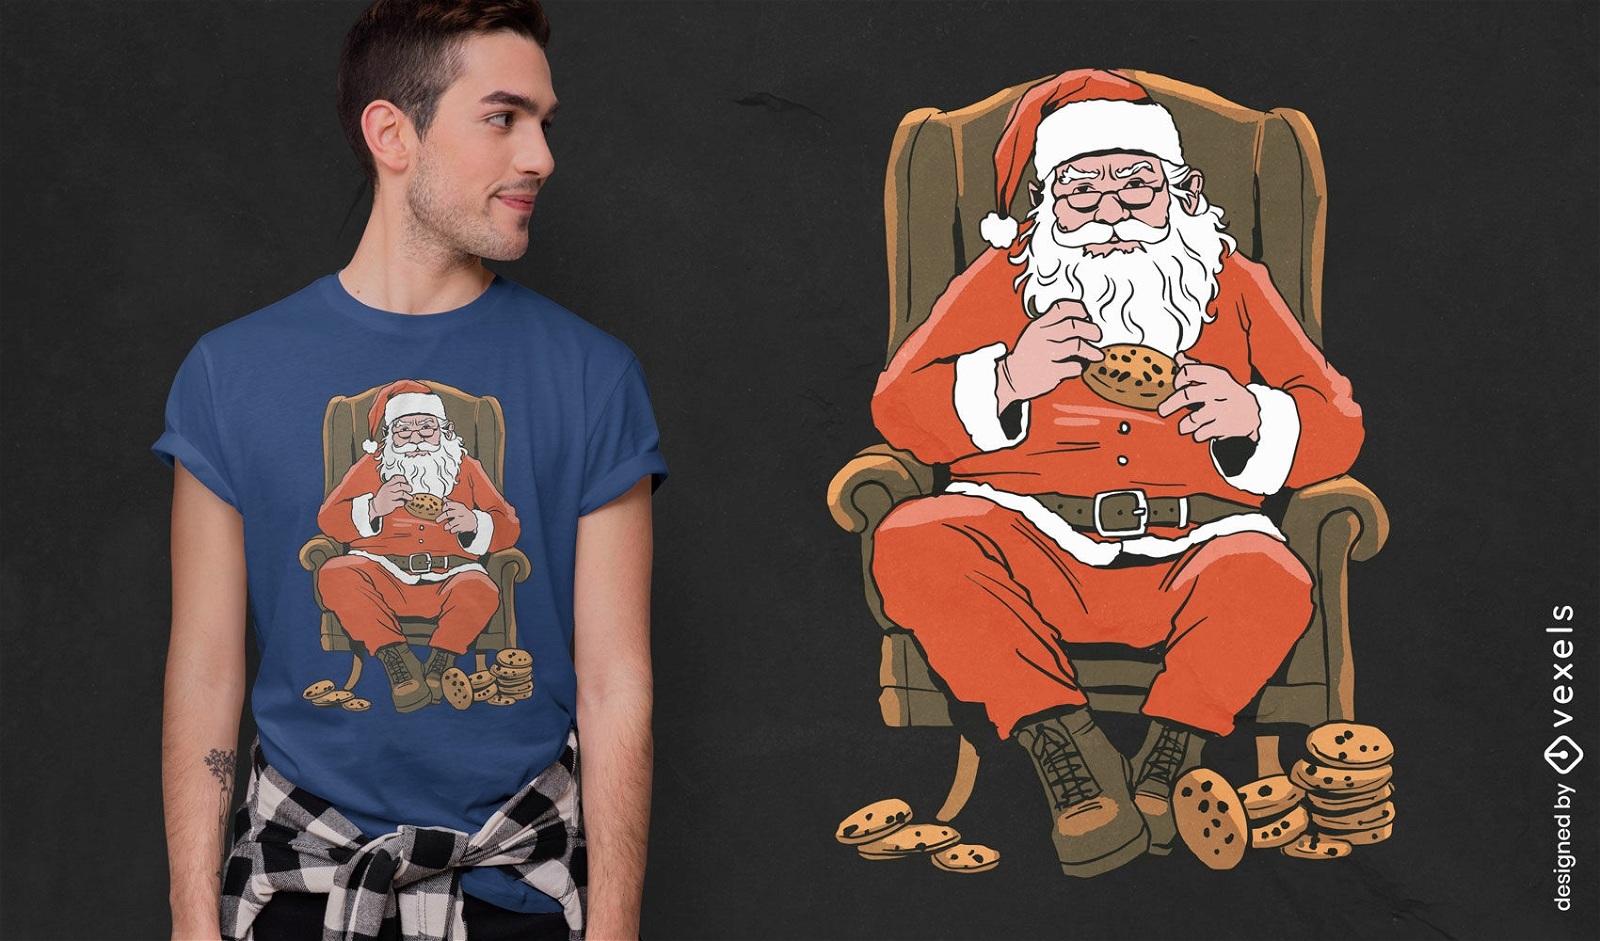 Vintage Santa Claus t-shirt design